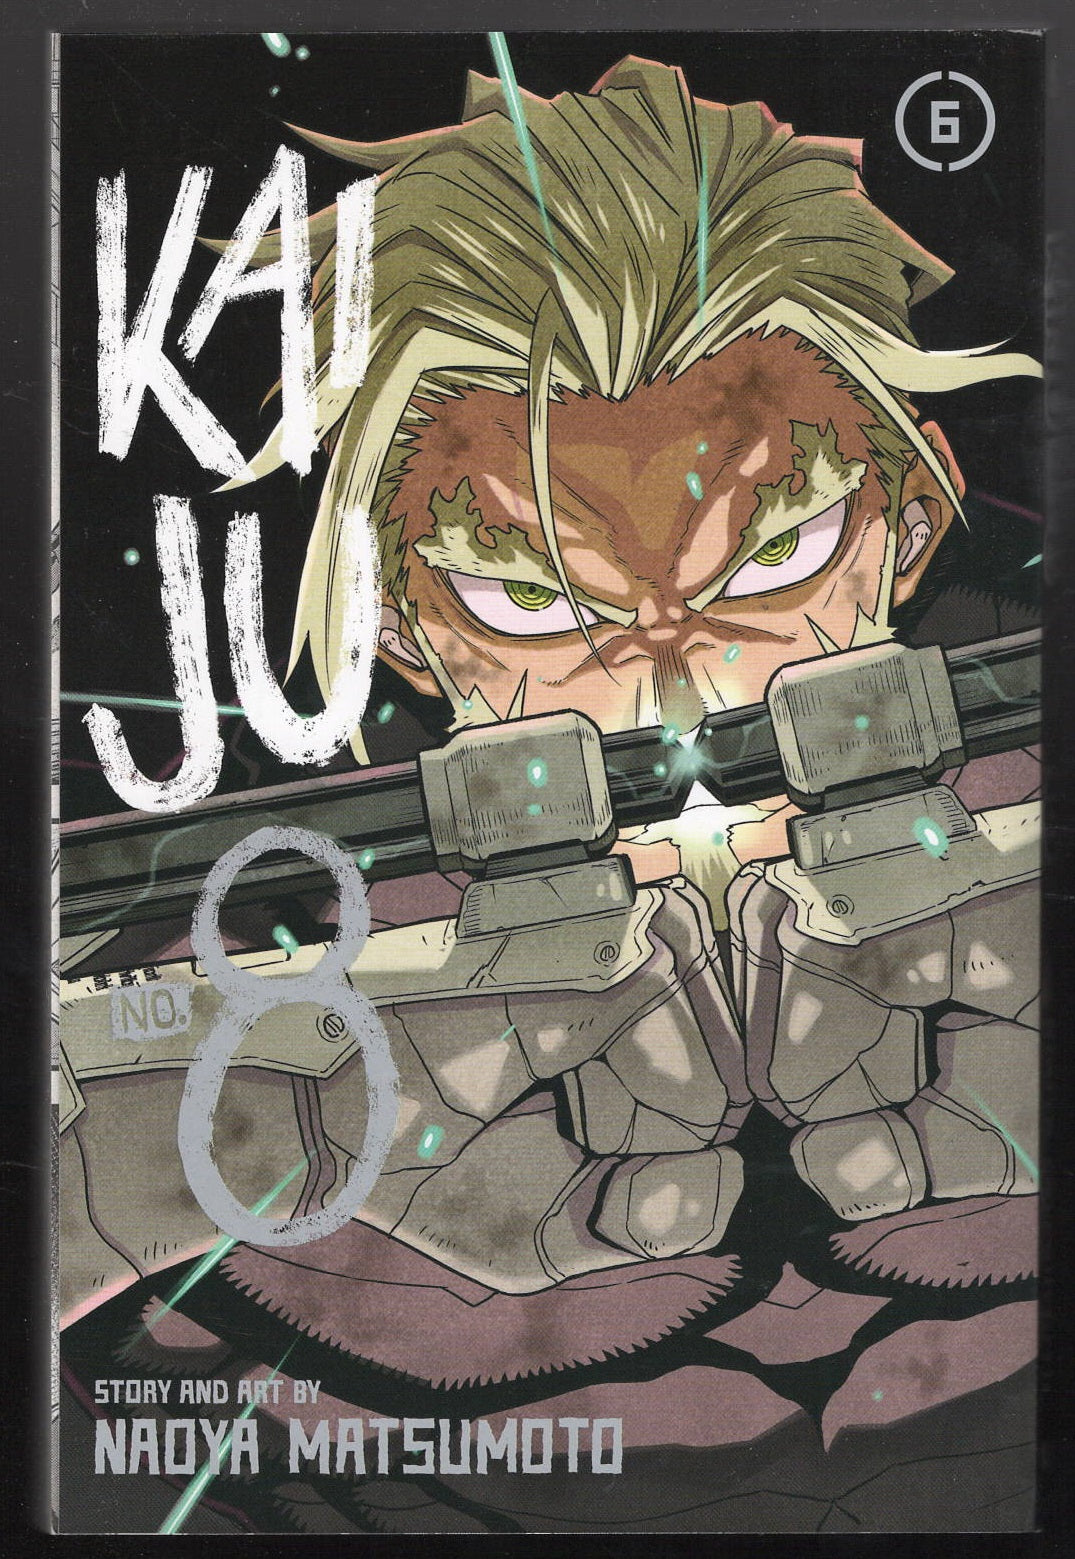 Kaiju no. 8 vol. 6